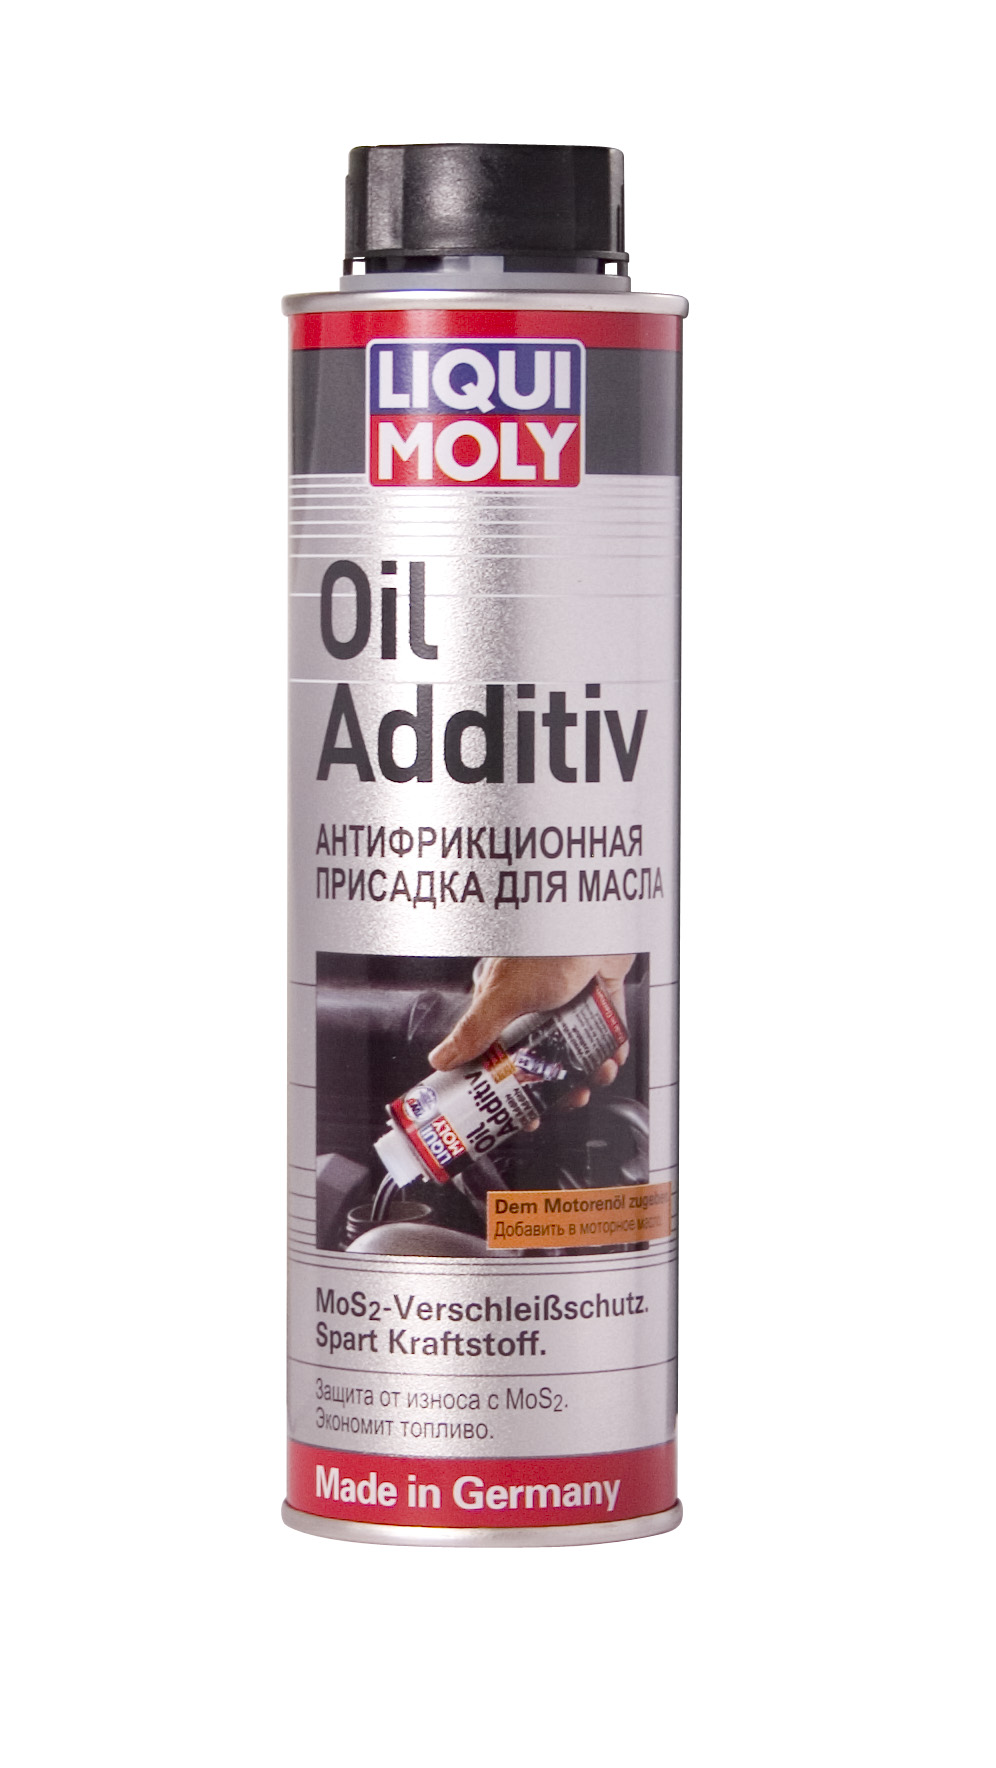 Присадка антифрикционная с дисульфидом молибдена в моторное масло Oil Additiv, 300мл - Liqui Moly 1998